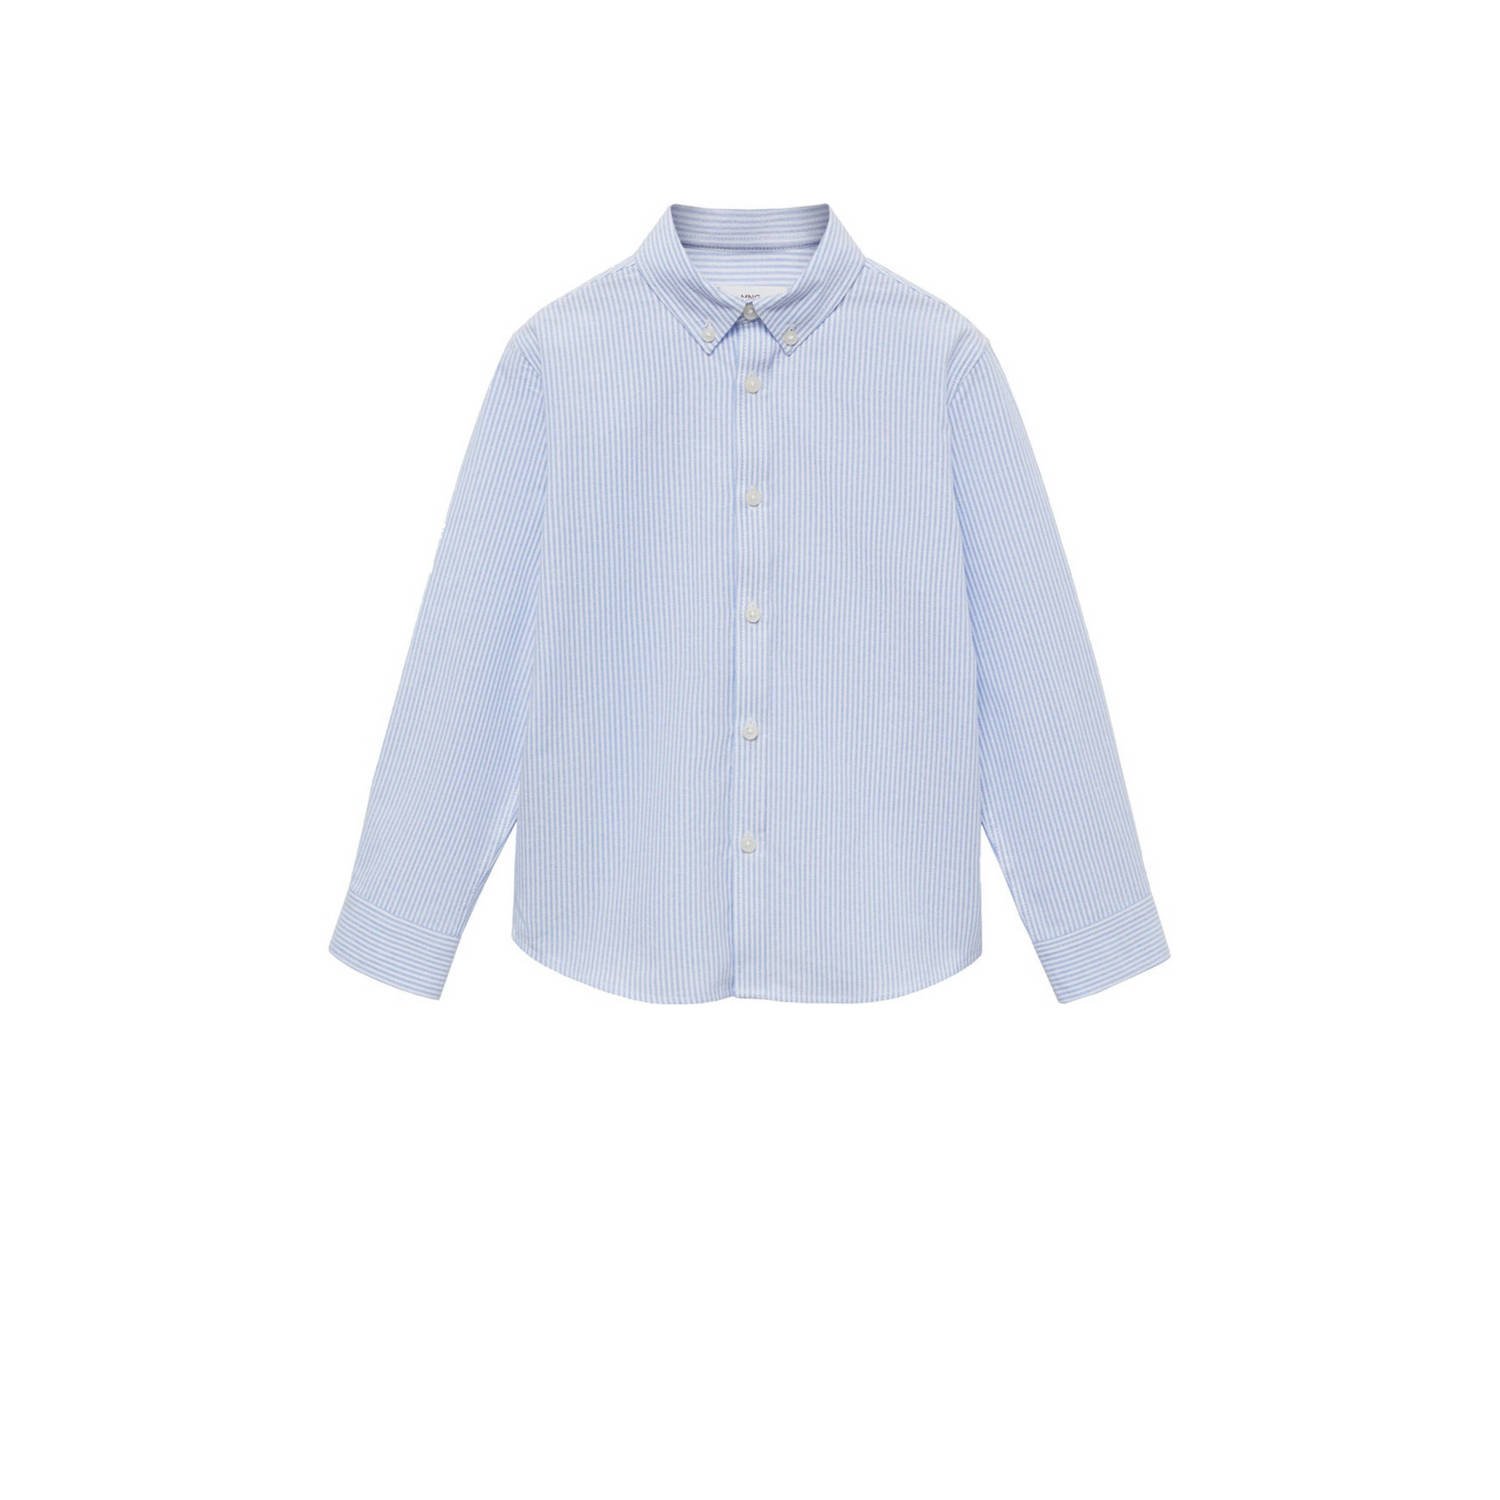 Mango Kids gestreepte blouse lichtblauw wit Meisjes Katoen Klassieke kraag 146